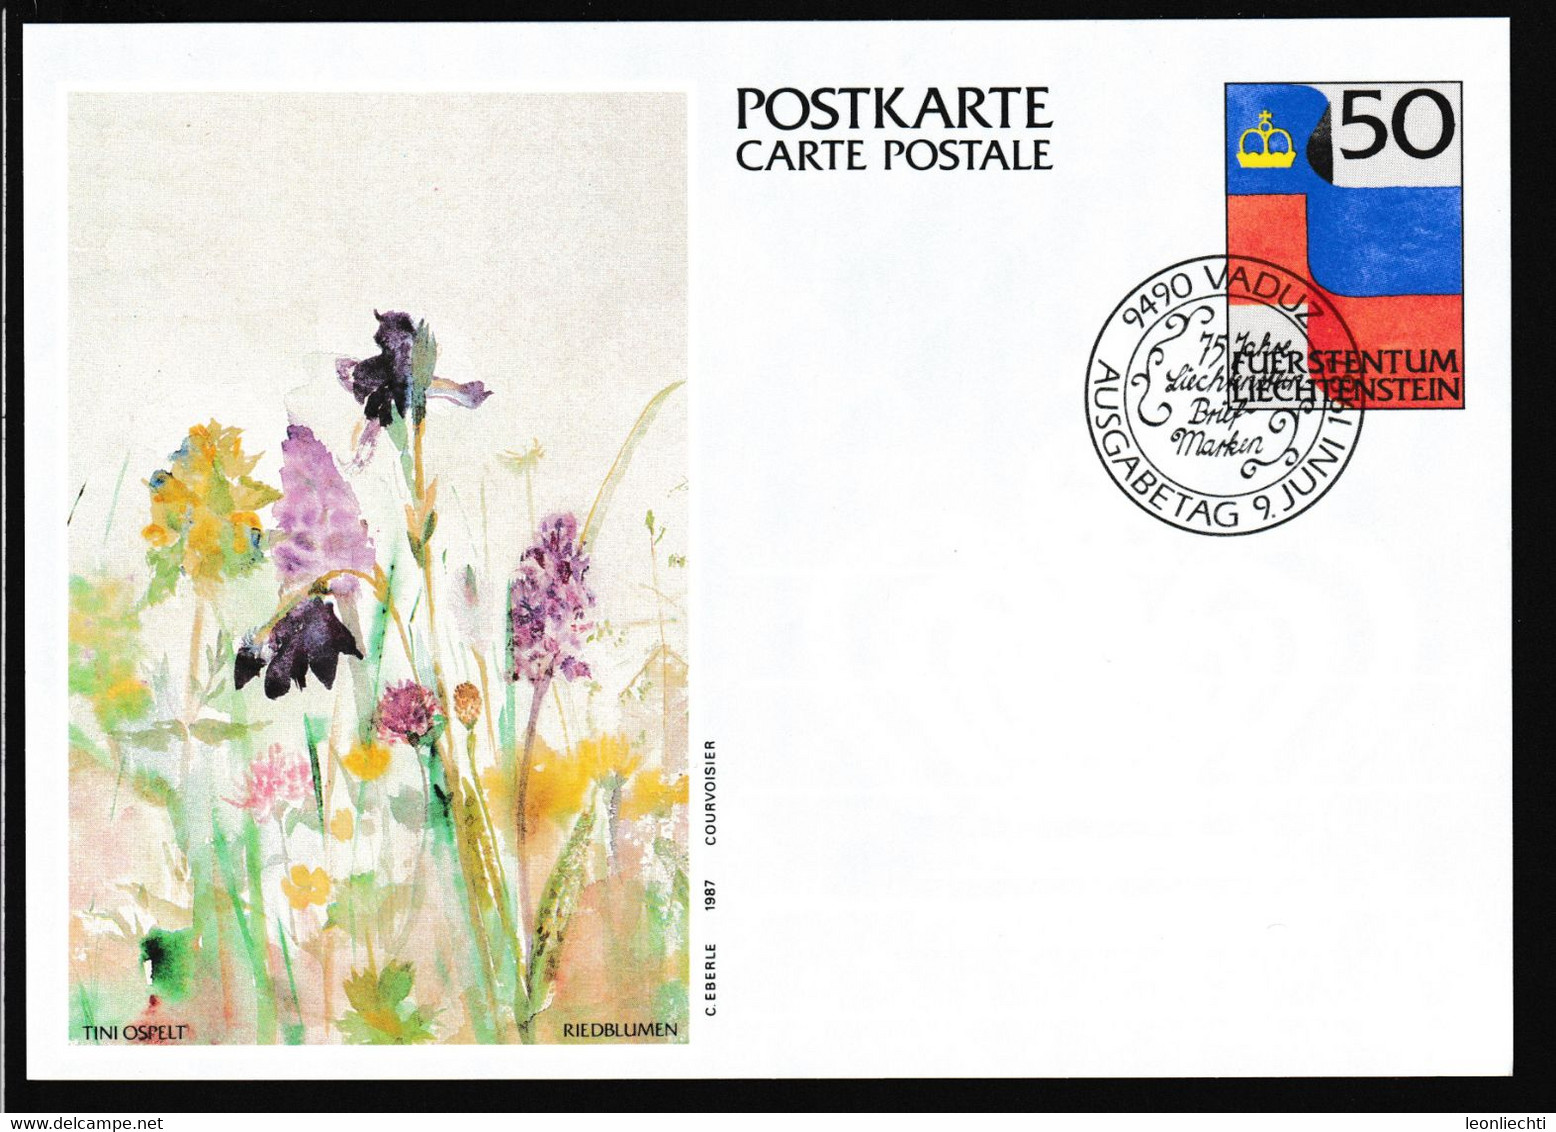 1987 Liechtenstein, Luftpost Carte Postale - Postkarte Ganzsache: Tini Ospelt , Riedblumen - Stamped Stationery